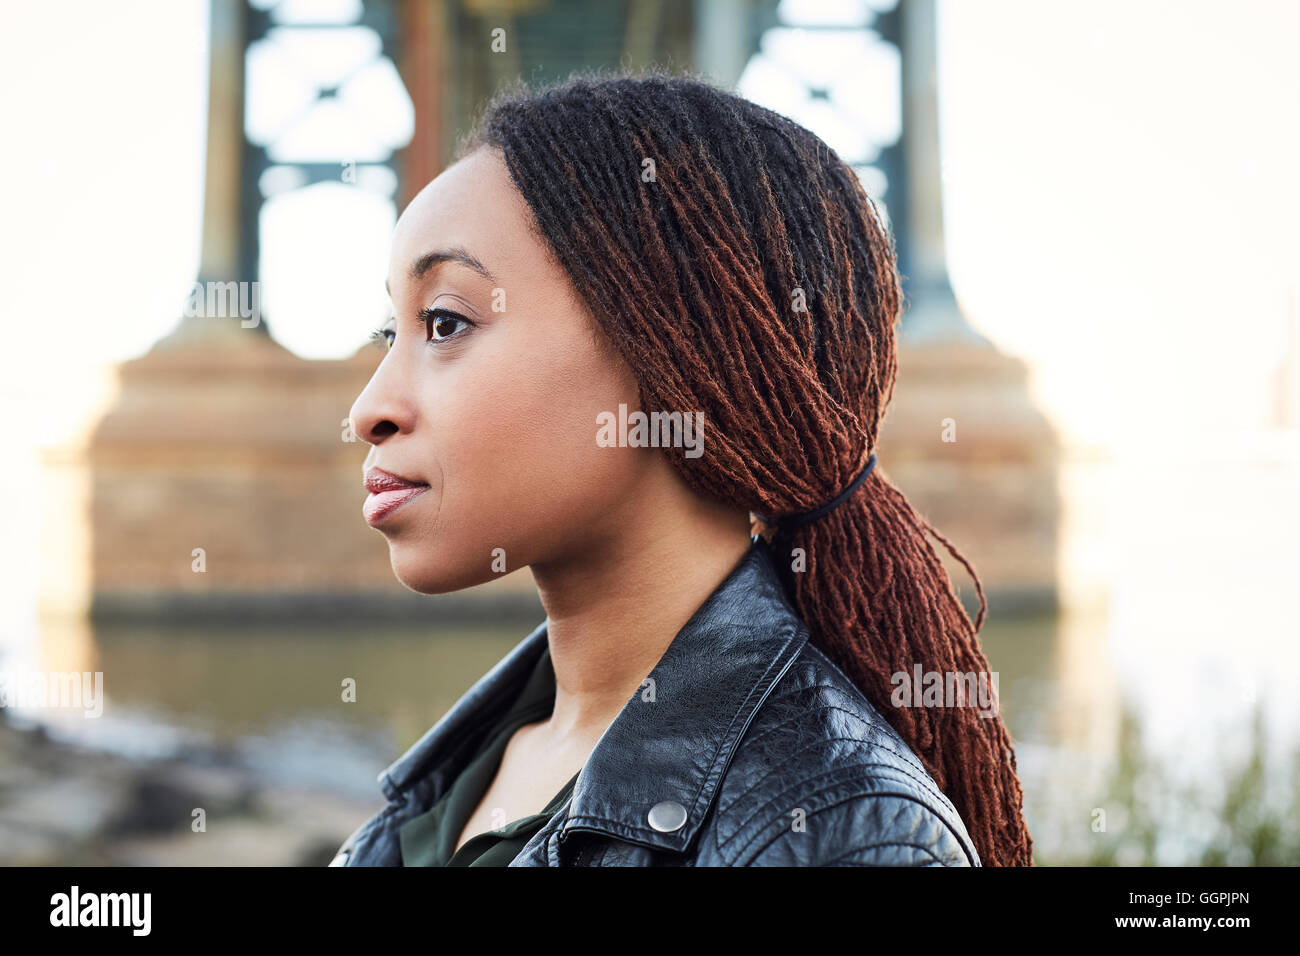 Profil de la femme noire sérieux à bridge Banque D'Images